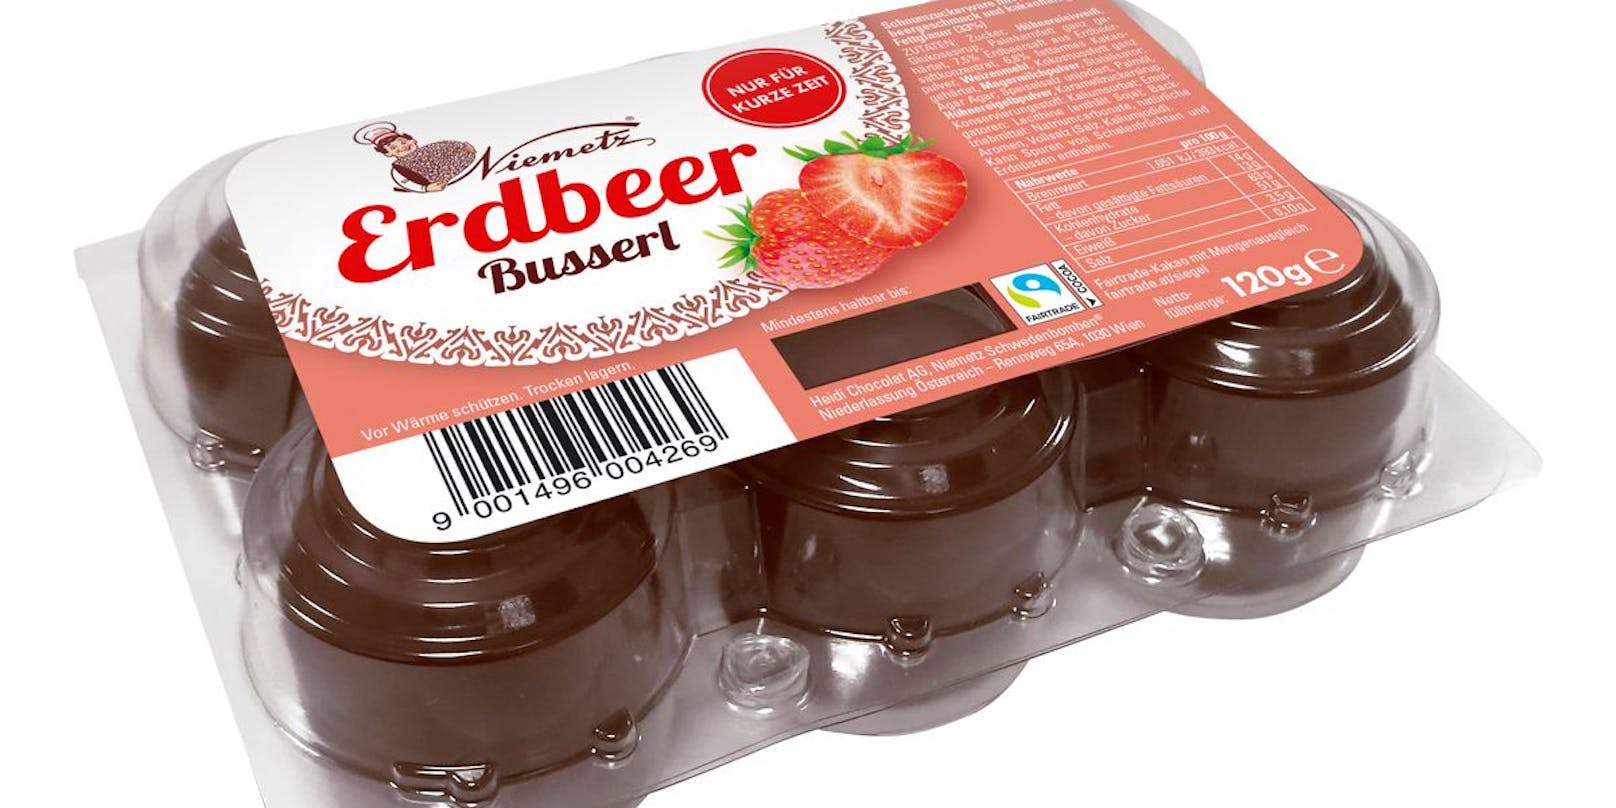 "Erdbeer Busserl"